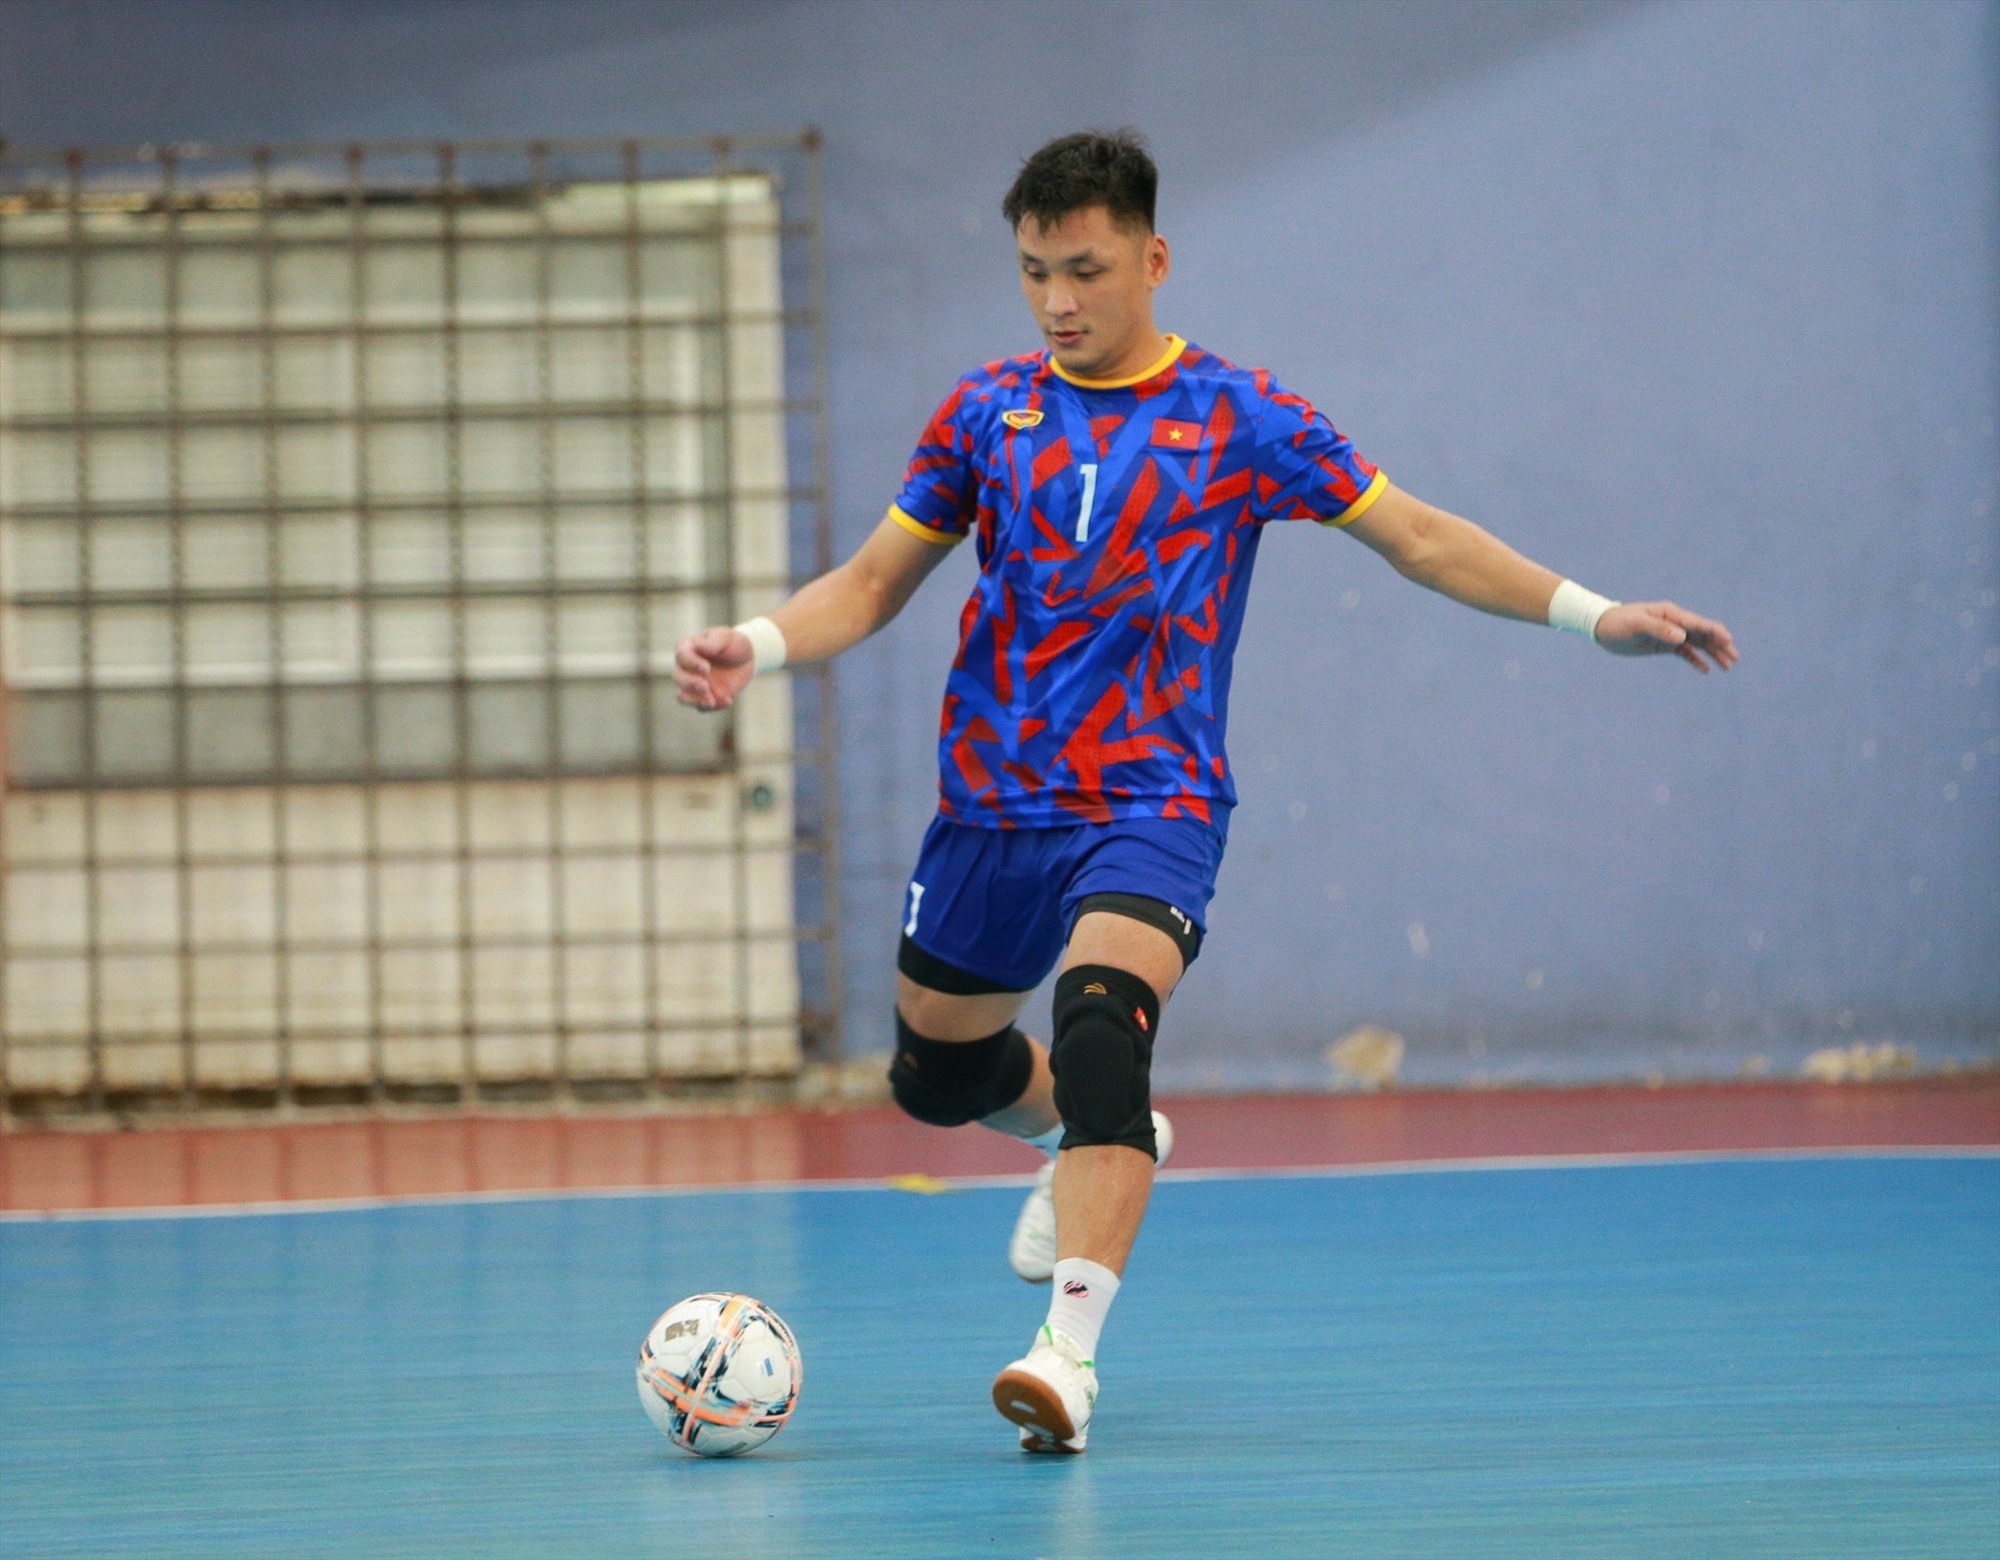 Thủ môn Hồ Văn Ý và các cầu thủ còn lại trong đội tuyển futsal Việt Nam vẫn giữ tinh thần thoải mái trong tập luyện.